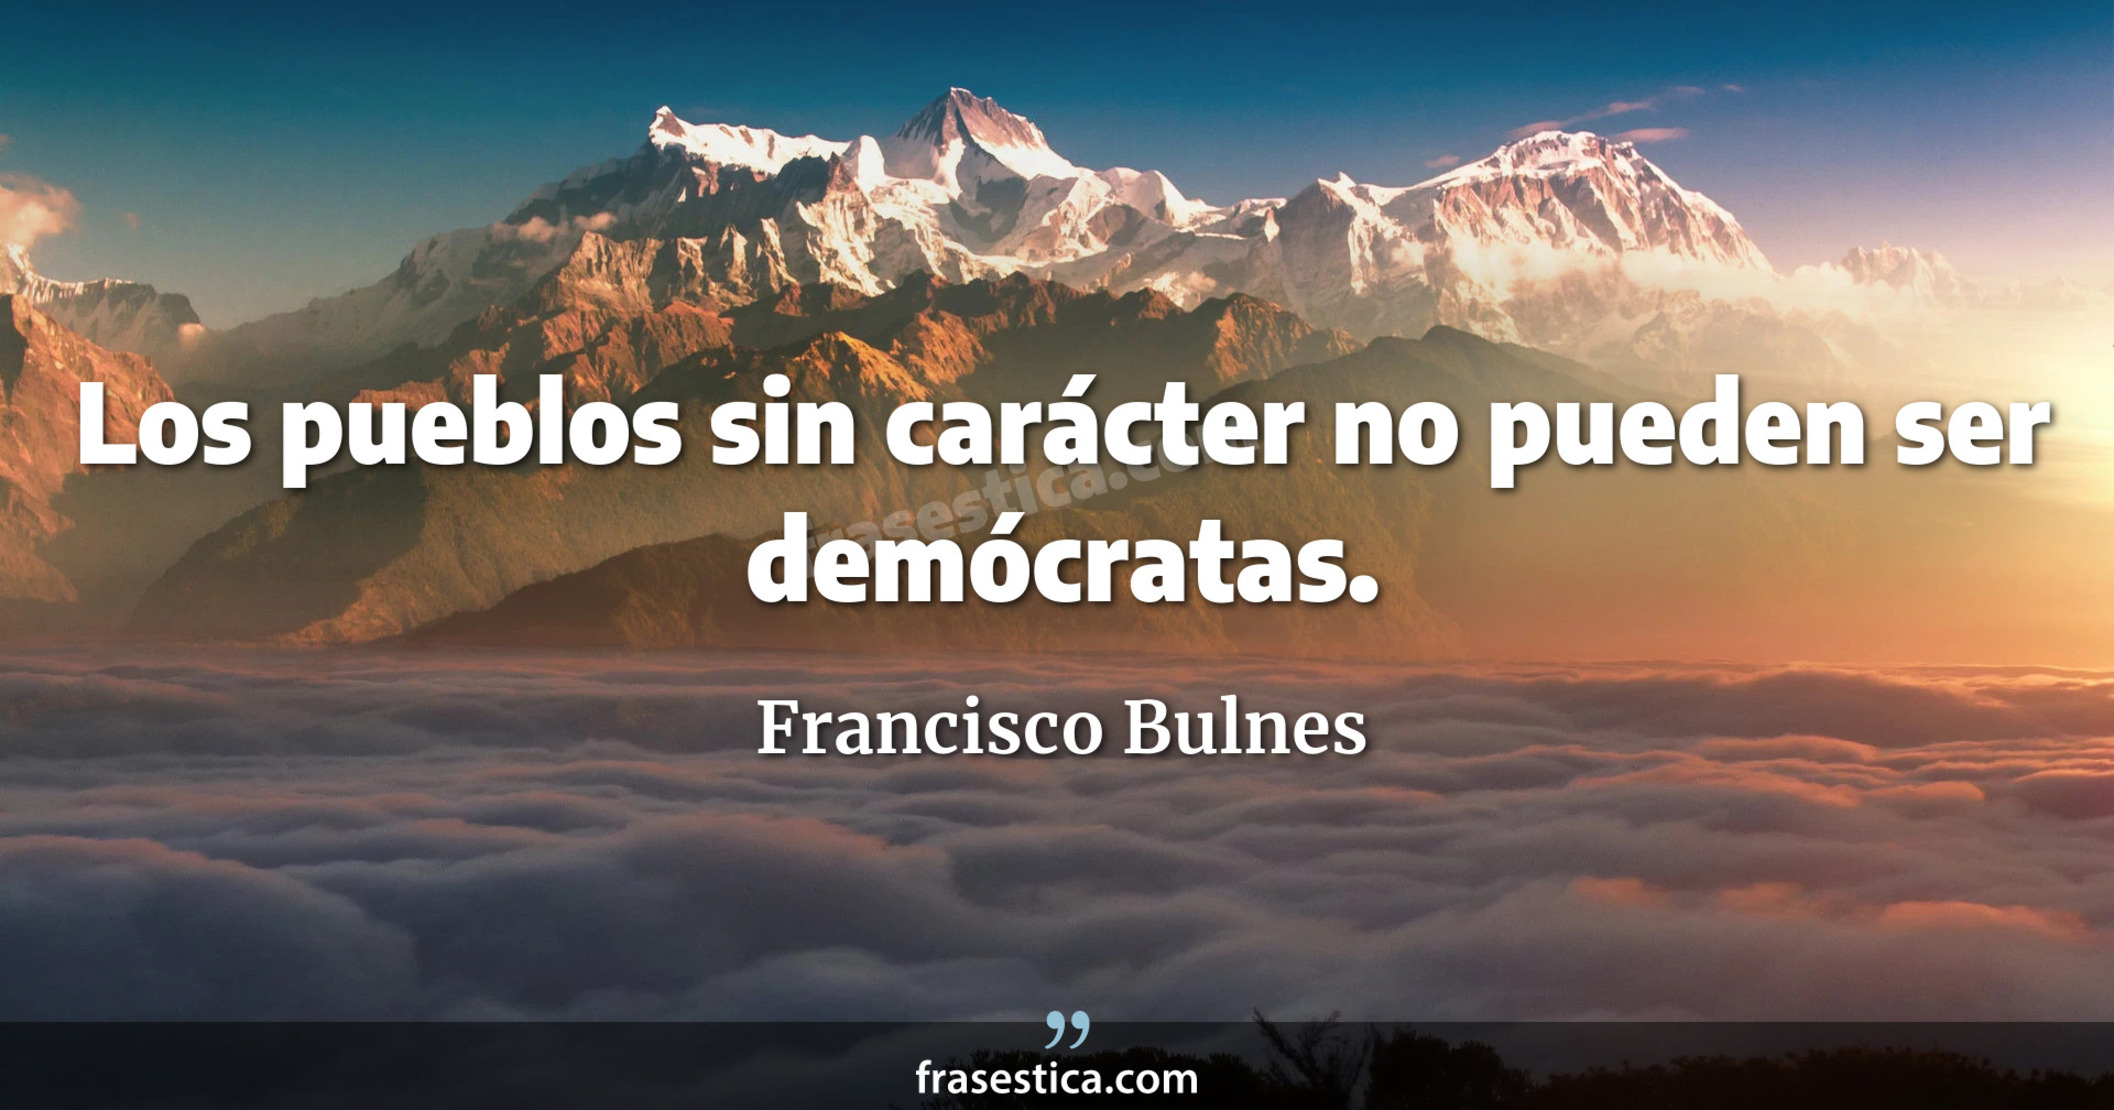 Los pueblos sin carácter no pueden ser demócratas. - Francisco Bulnes